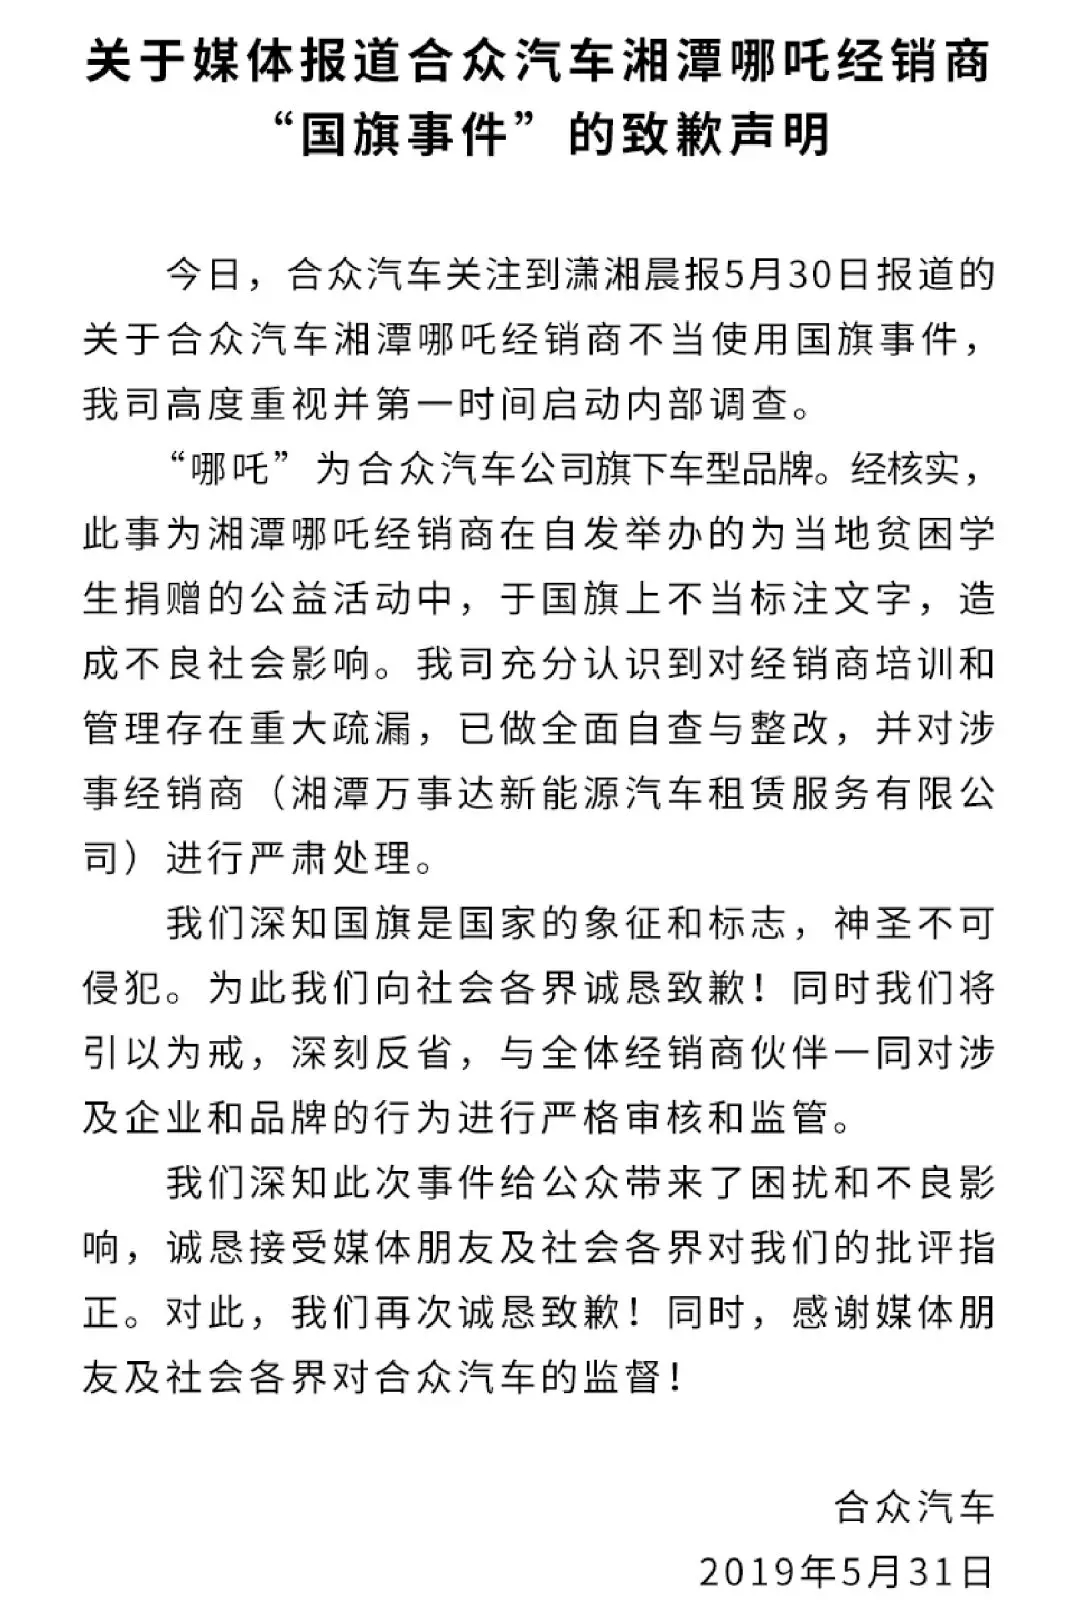  花莲县选举委员会当天晚间公布，中国国民党提名的候选人魏嘉贤取得17923票，以53.8%的得票率击败民进党提名的张美慧(13958票)。